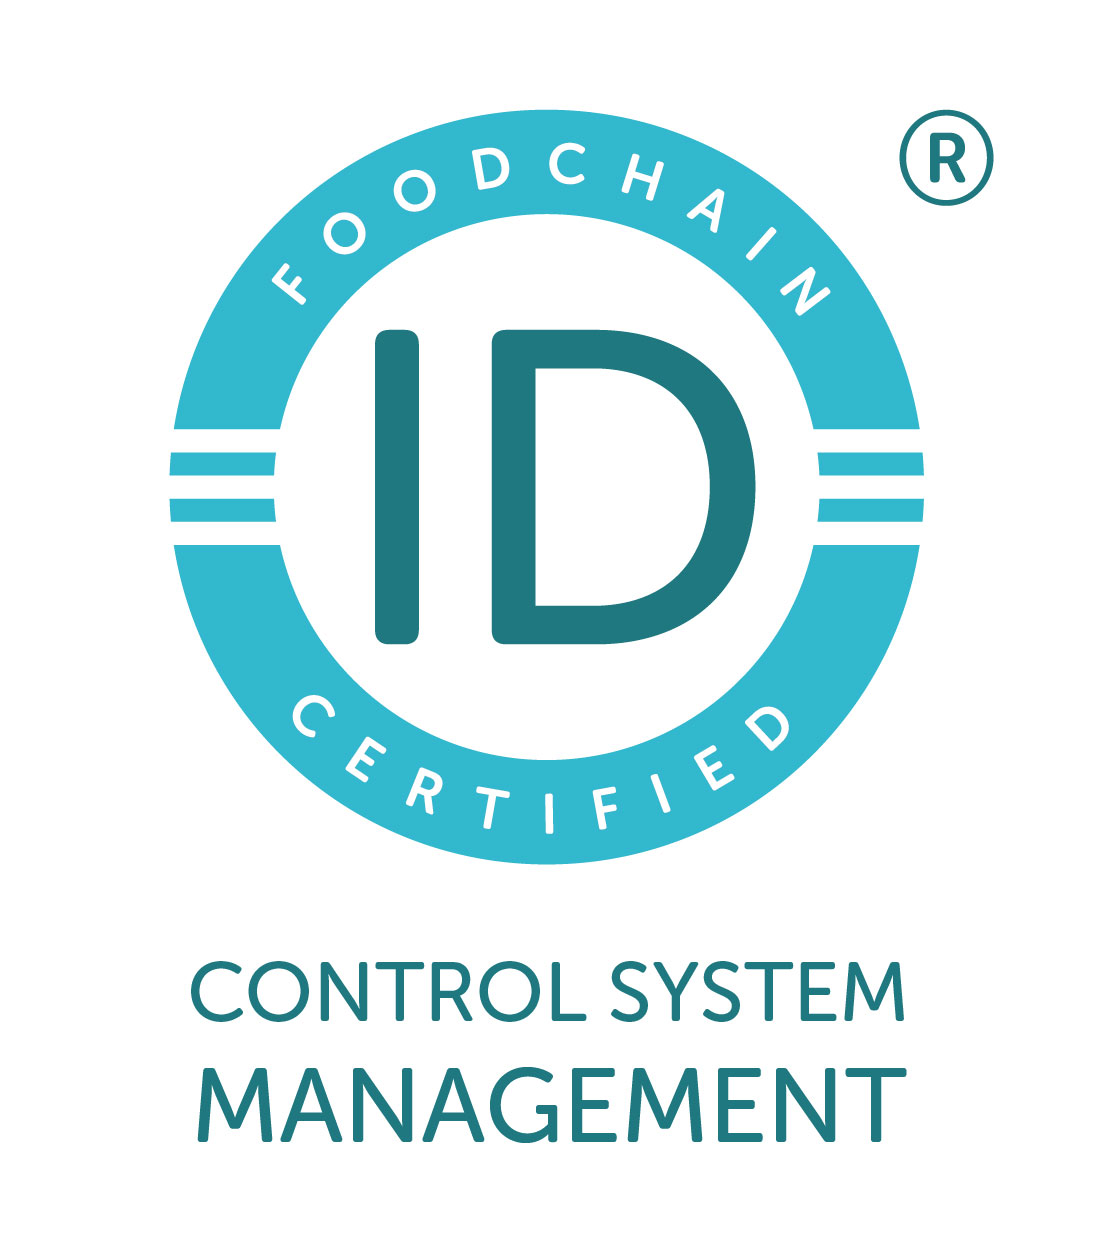 foodchain control system rgb-01